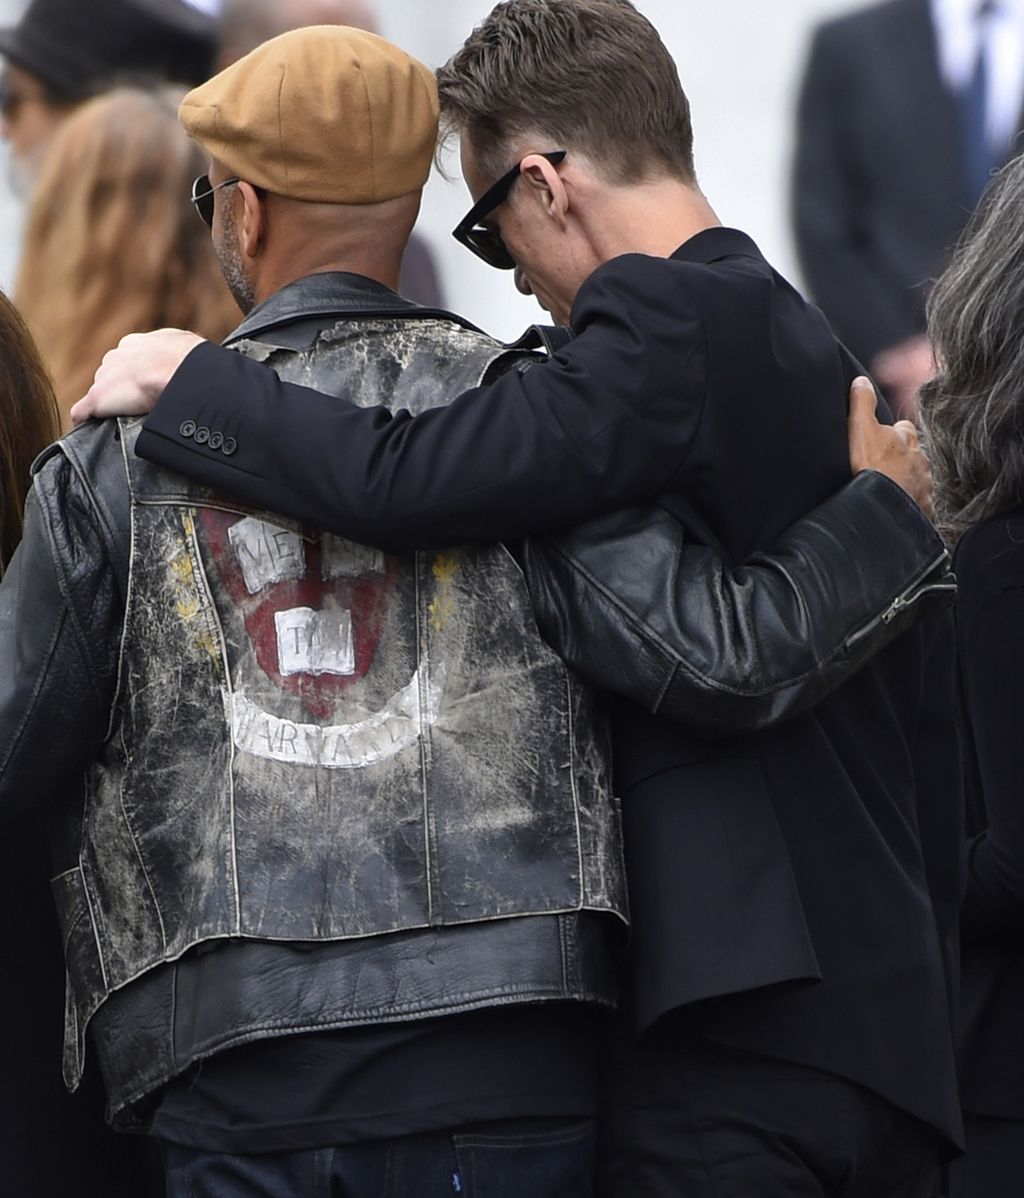 El funeral de Chris Cornell reunió a multitud de estrellas del cine y la música